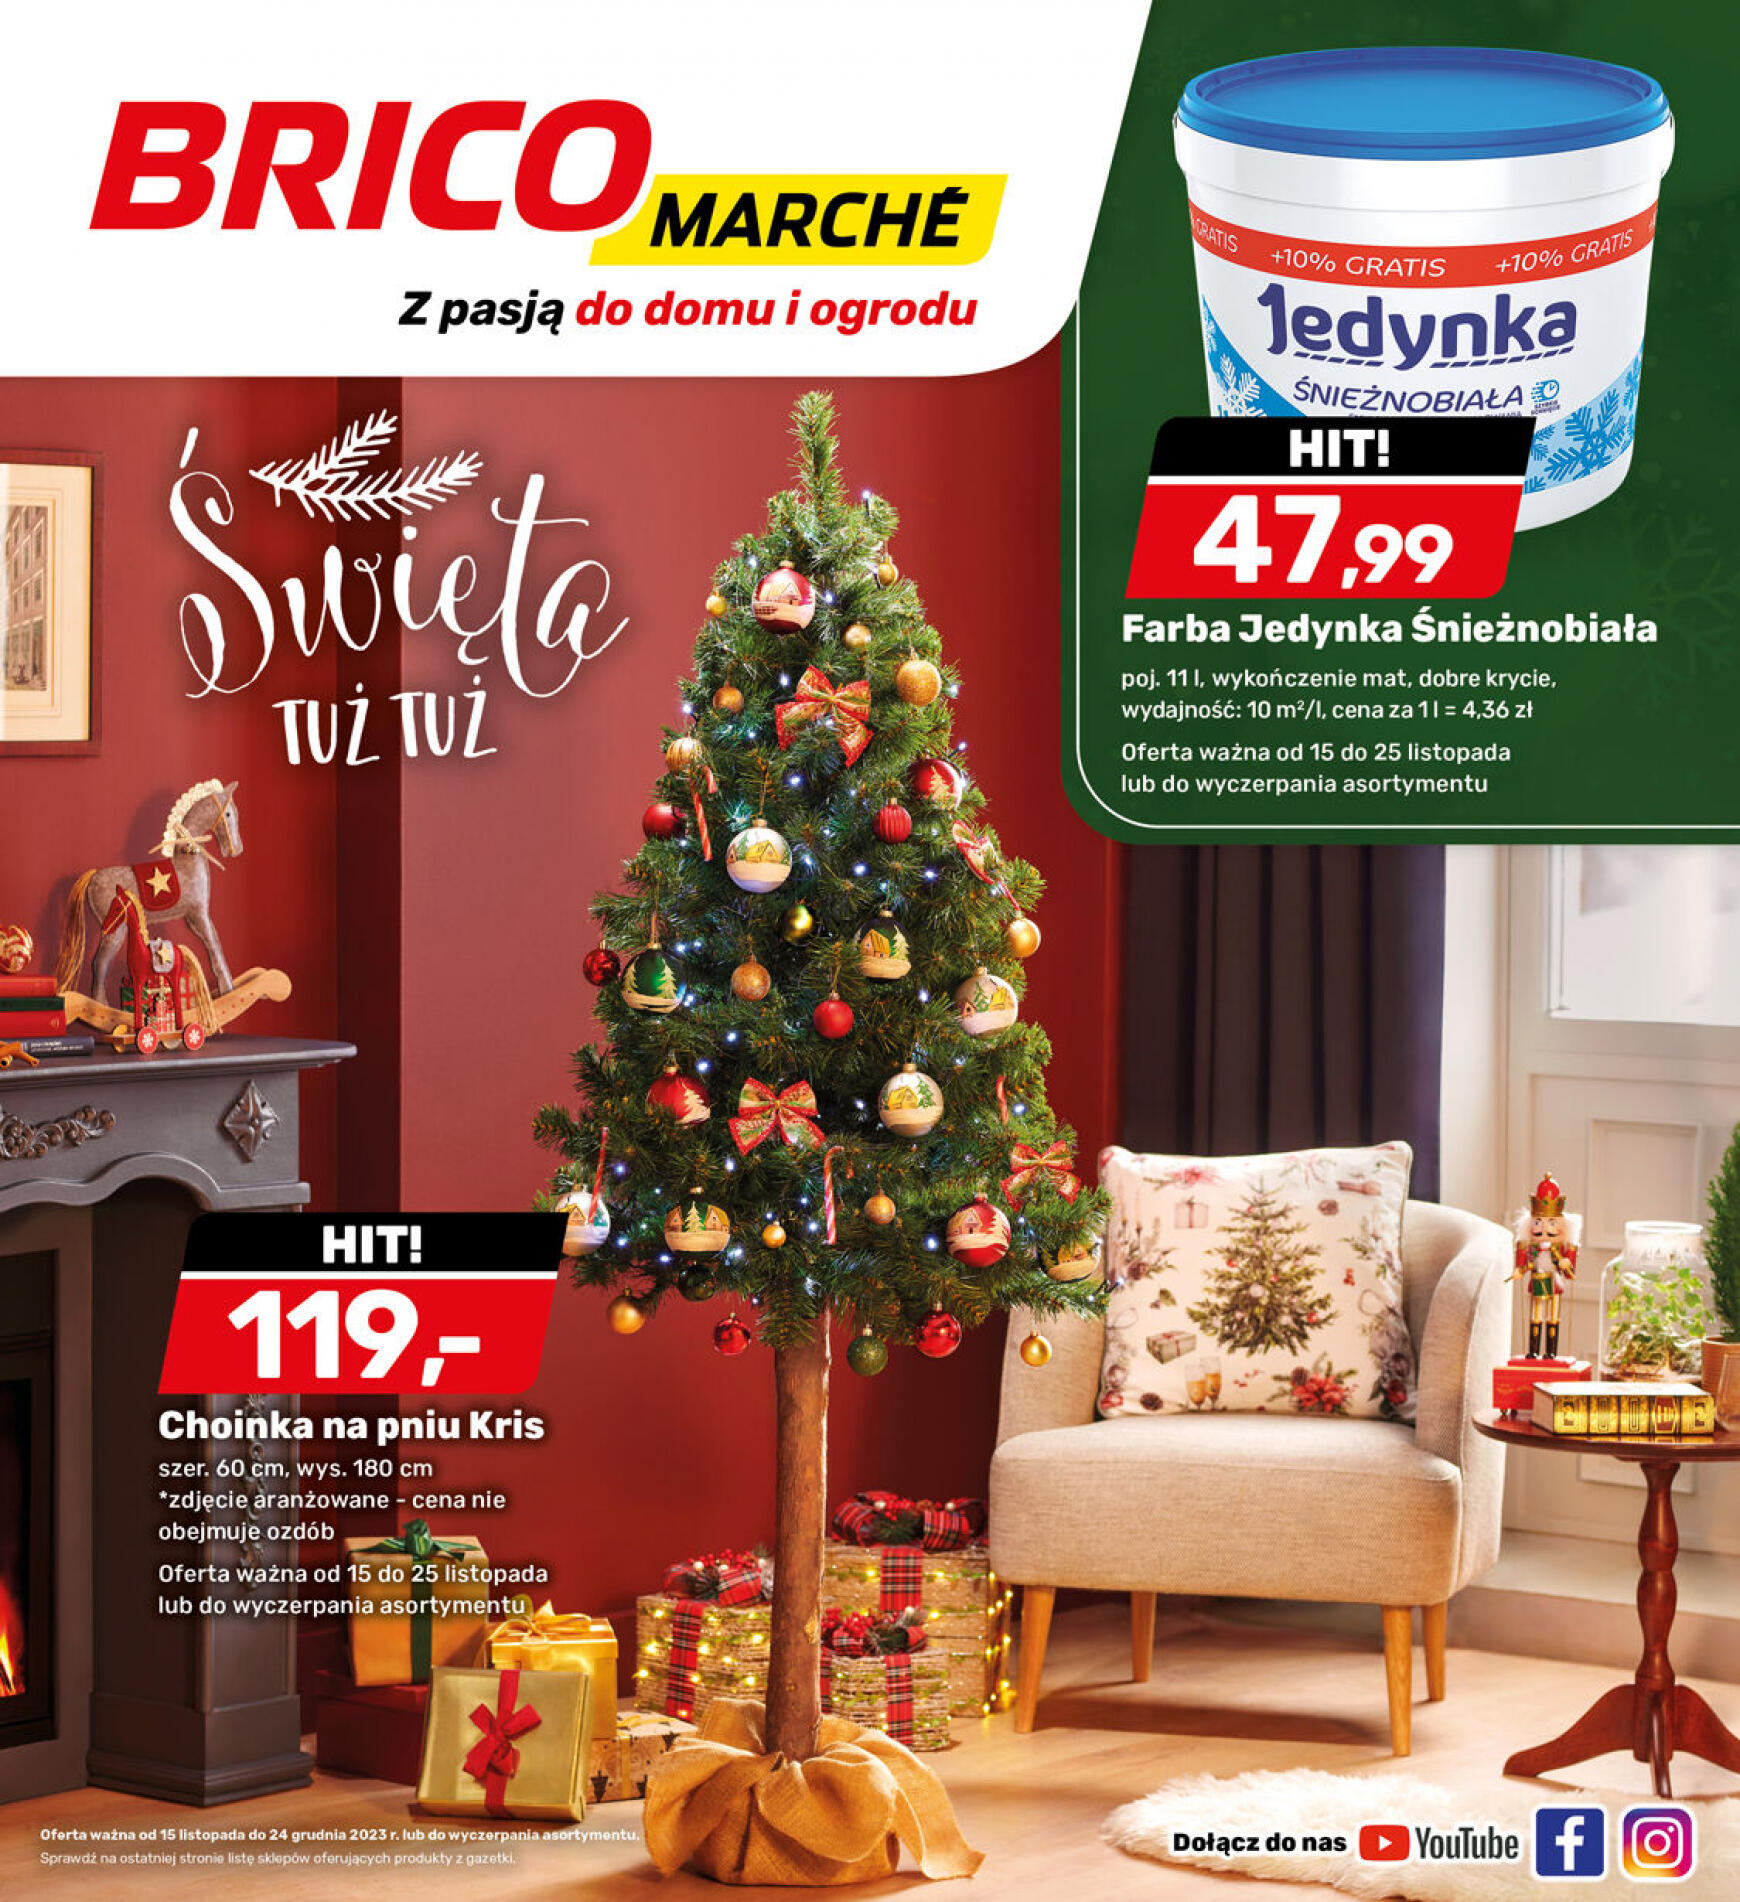 brico-marche - - Bricomarche - page: 24